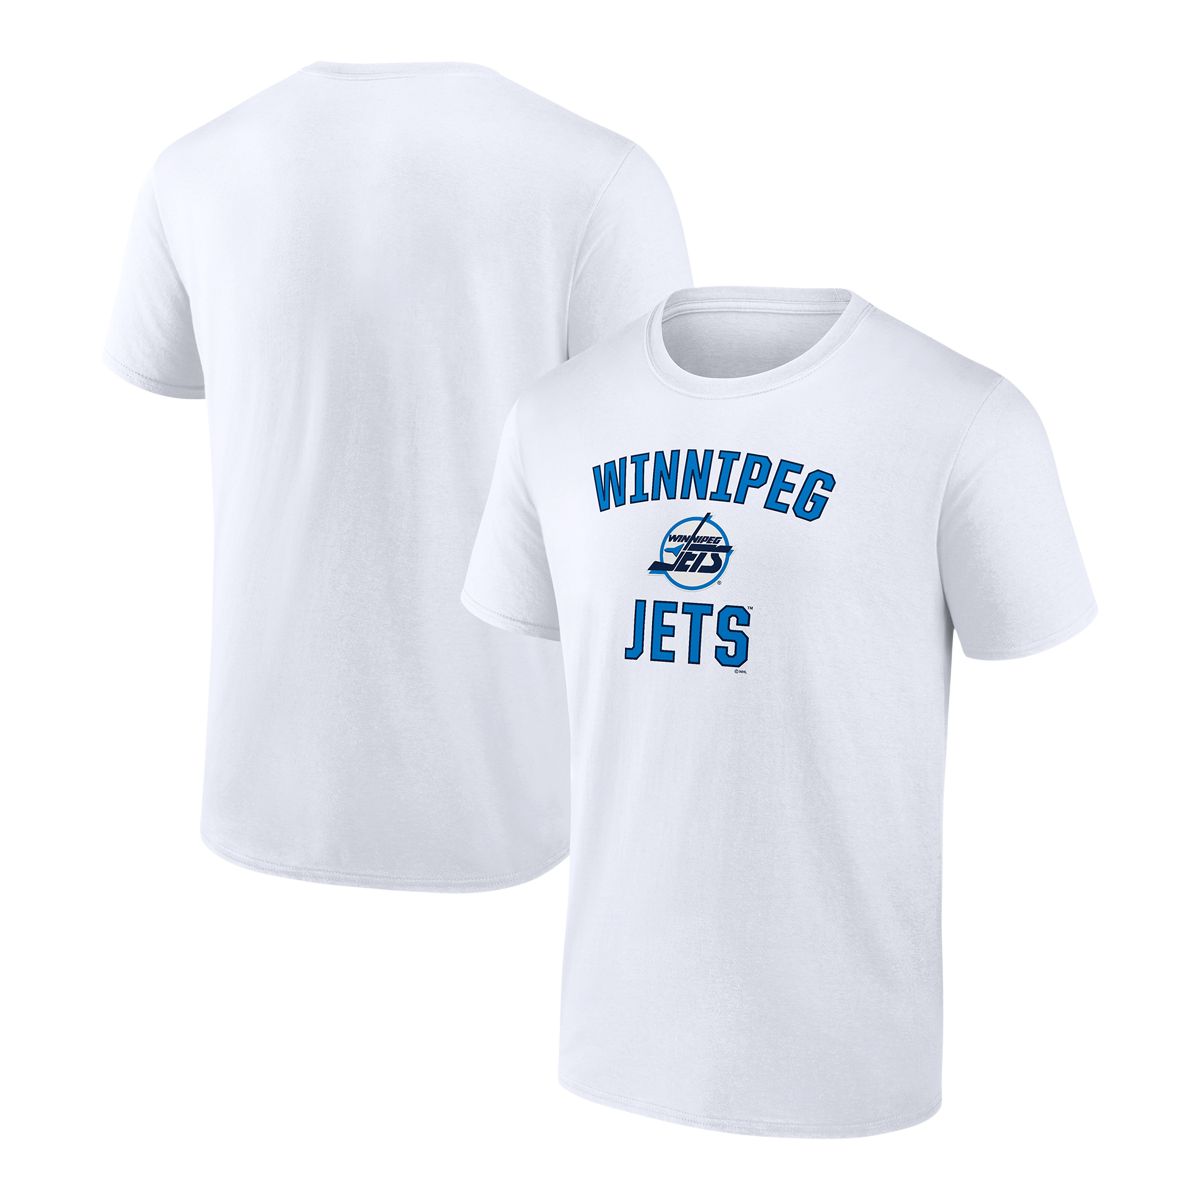 Winnipeg Jets Mens Tees, Jets T-Shirts, Shirts, Tank Tops